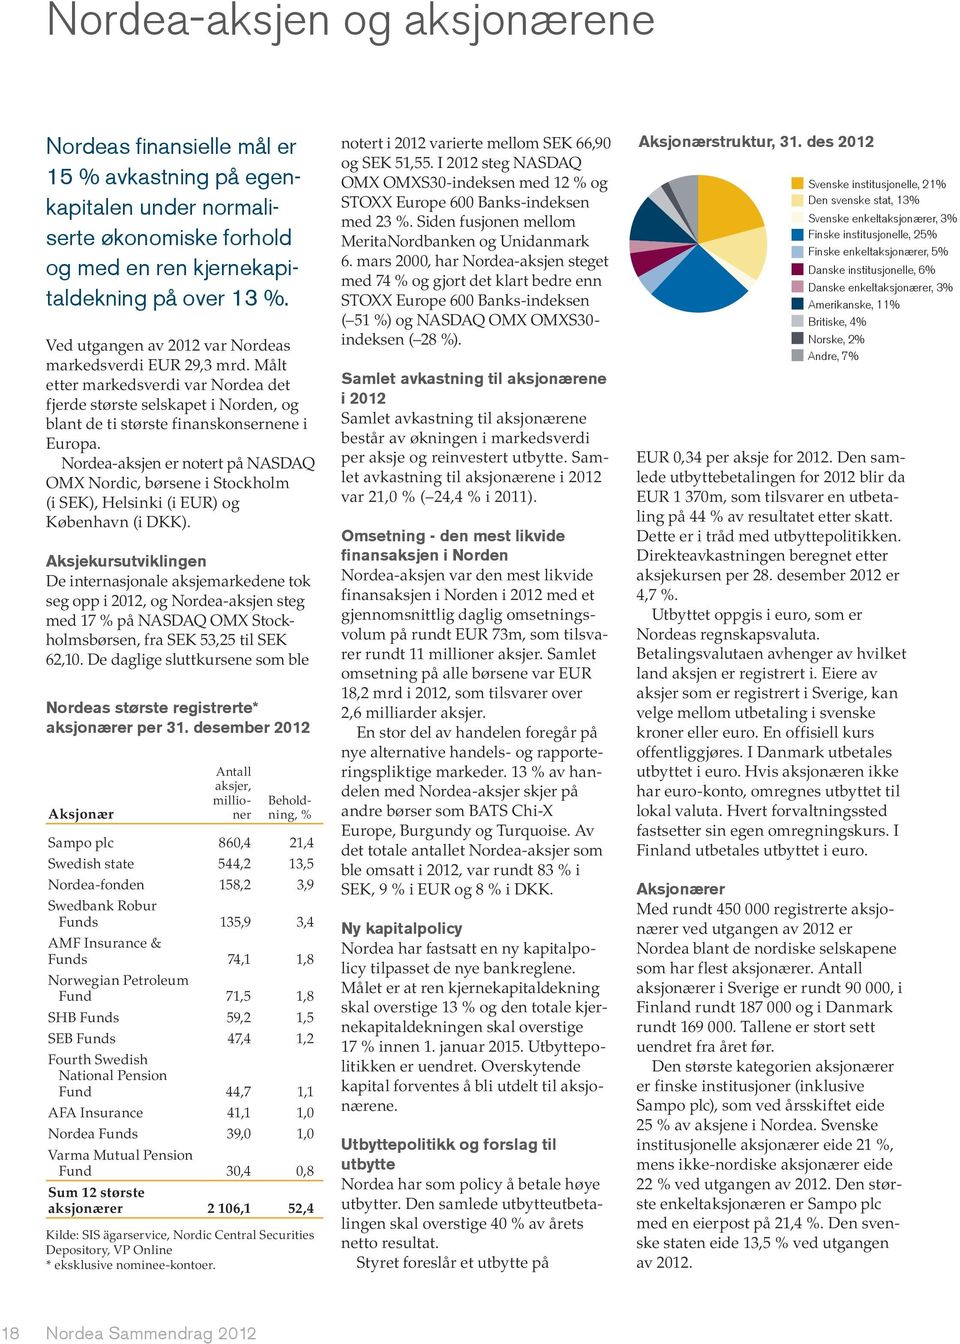 OMX Nordic, børsene i Stockholm Aksjekursutviklingen De internasjonale aksjemarkedene tok seg opp i 2012, og Nordea-aksjen steg - 62,10.